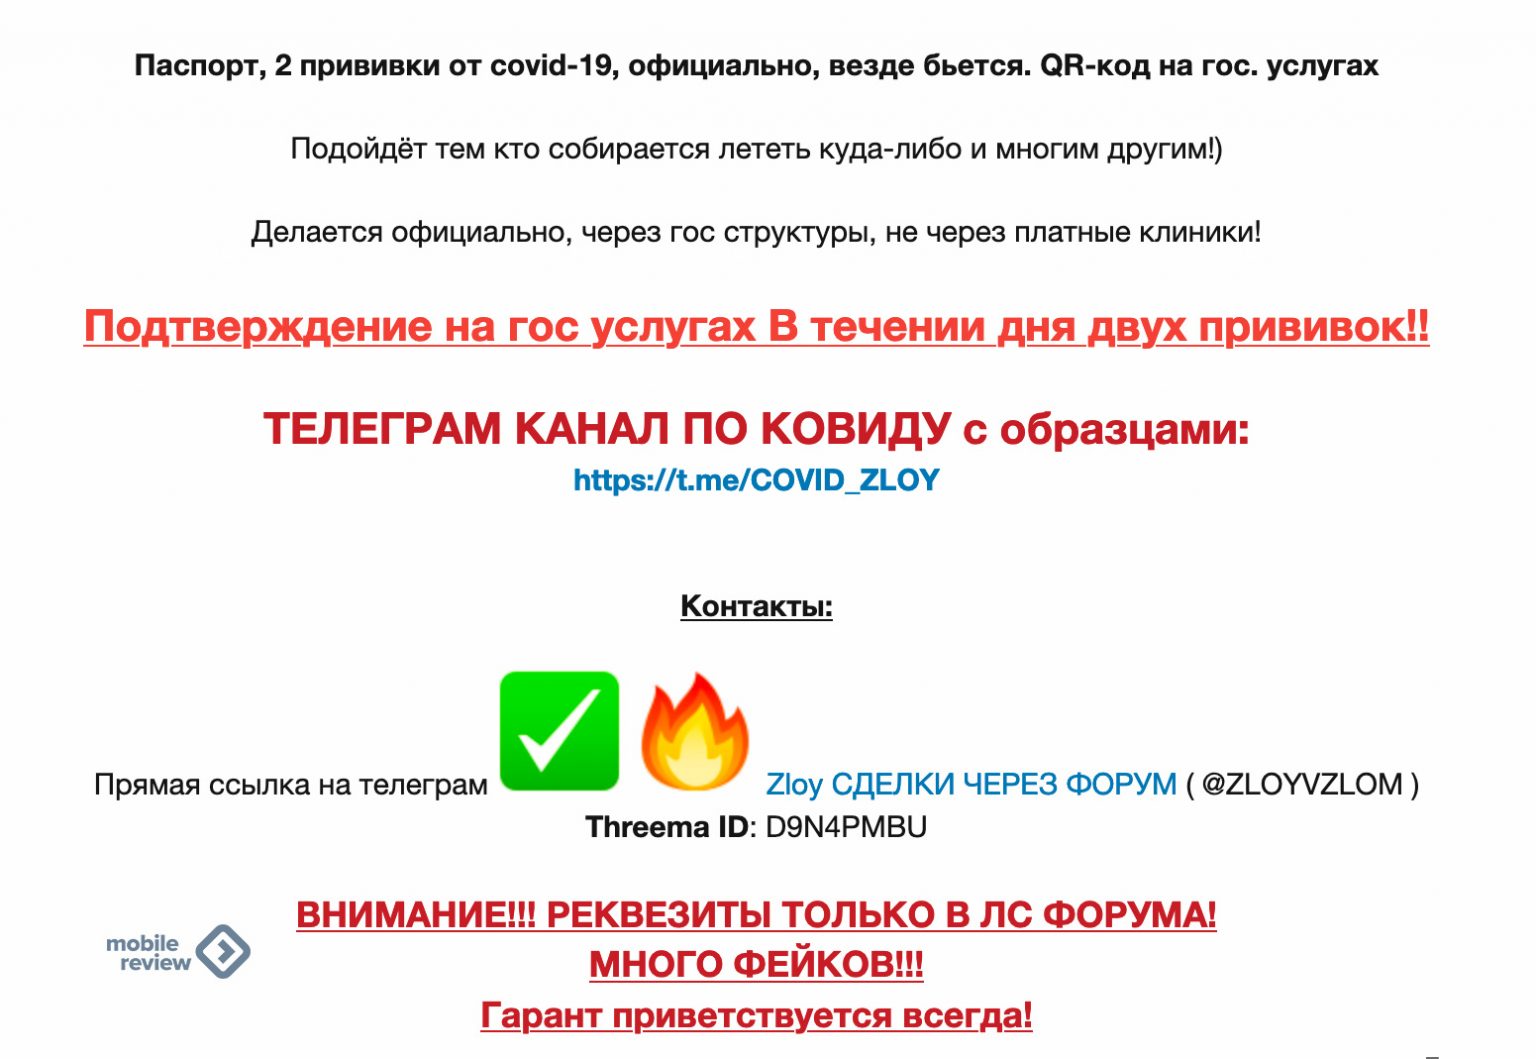 Сертификат даркнет браузер тор скачать на русском с официального сайта на виндовс 10 вход на гидру